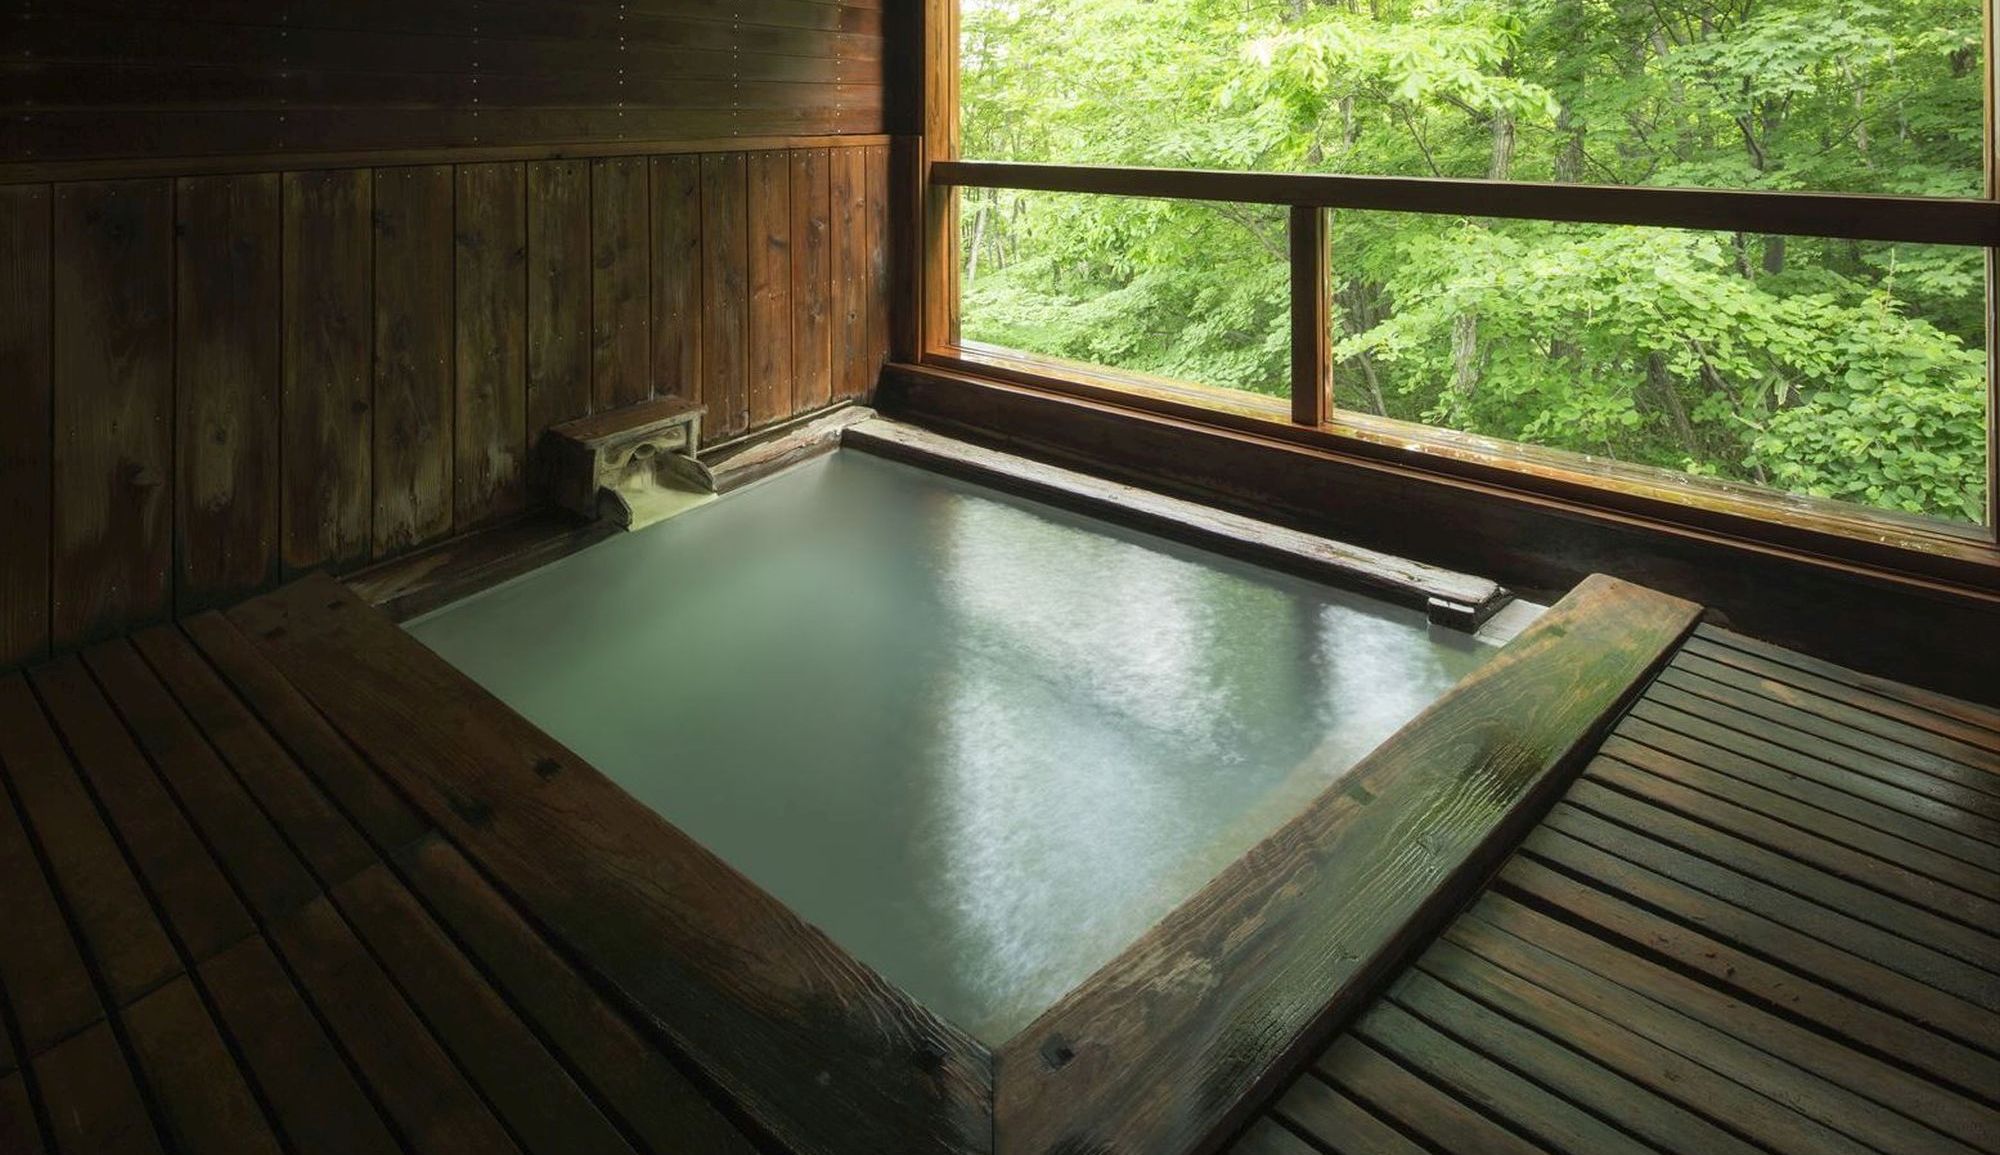 【温泉浴場やすらぎの湯】〜名湯「蔵王温泉」を贅沢な源泉掛け流しでご堪能下さい